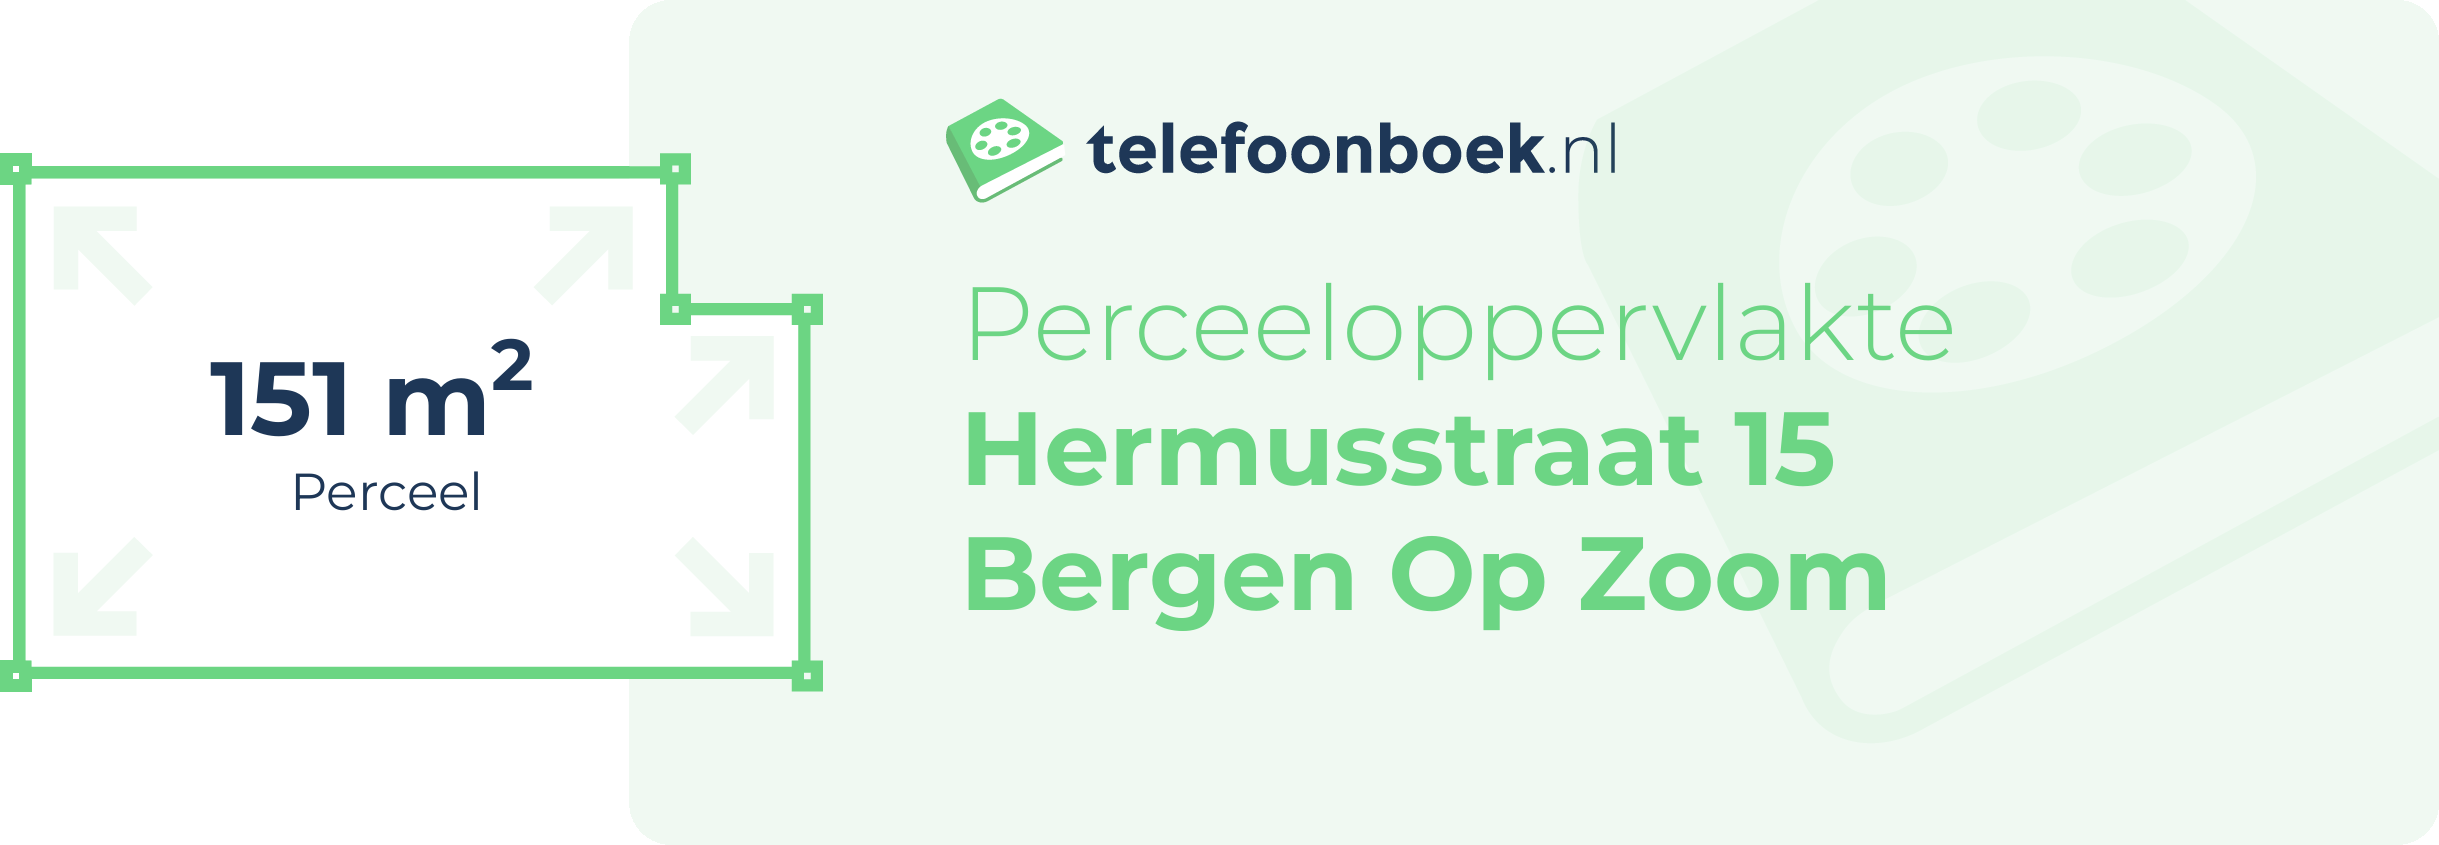 Perceeloppervlakte Hermusstraat 15 Bergen Op Zoom